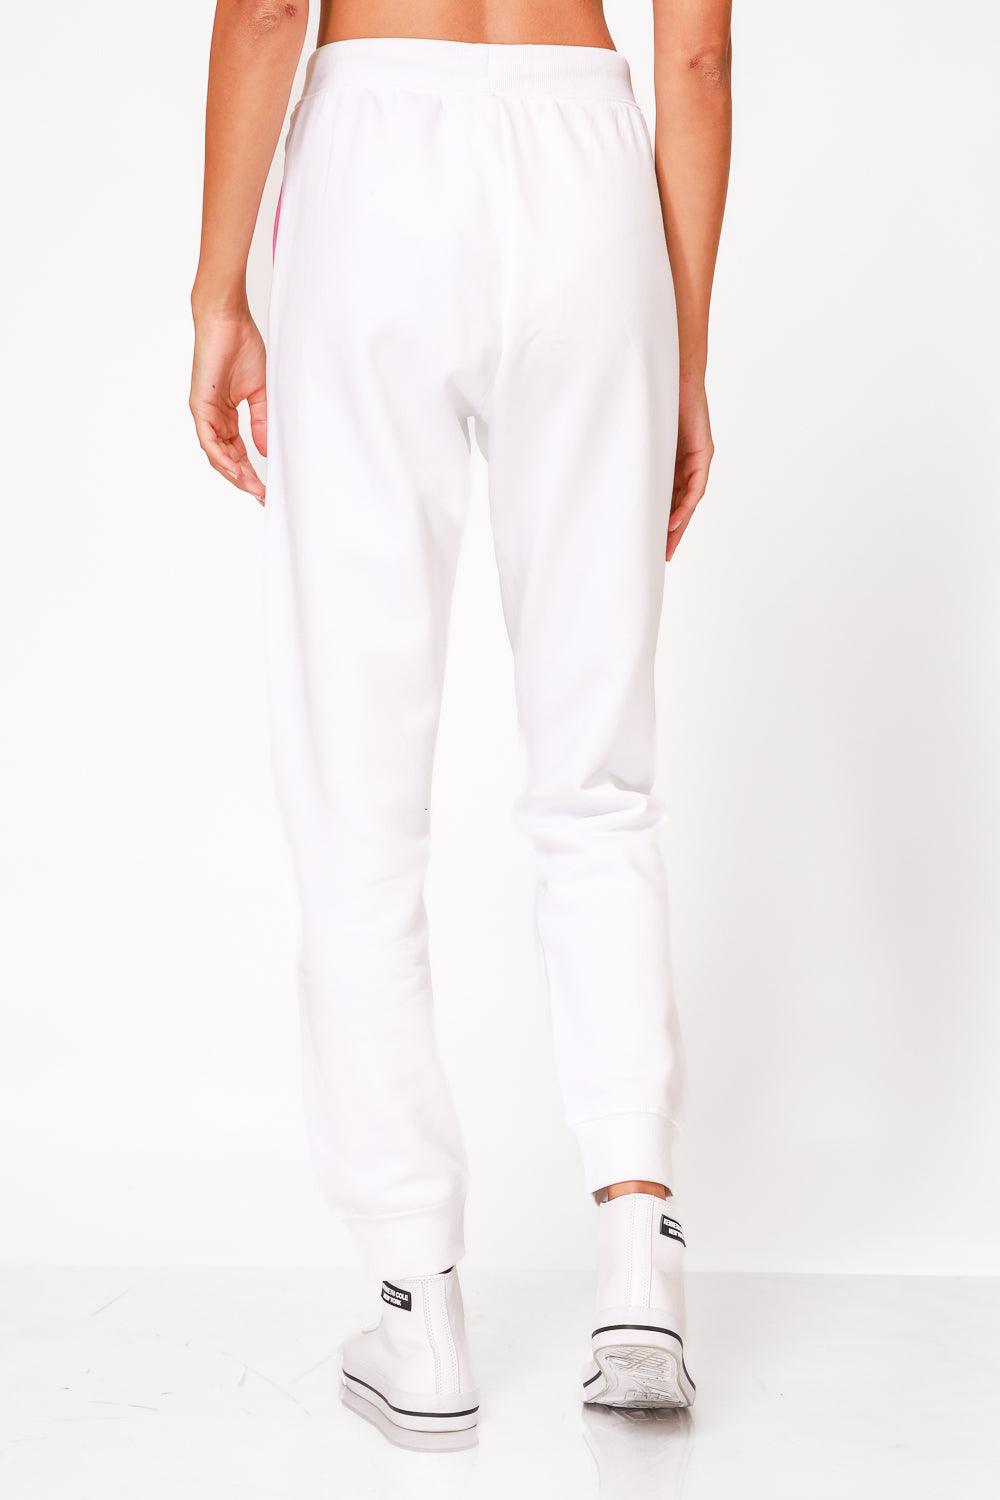 מכנסיים ארוכים לנשים בצבע לבן - MASHBIR//365